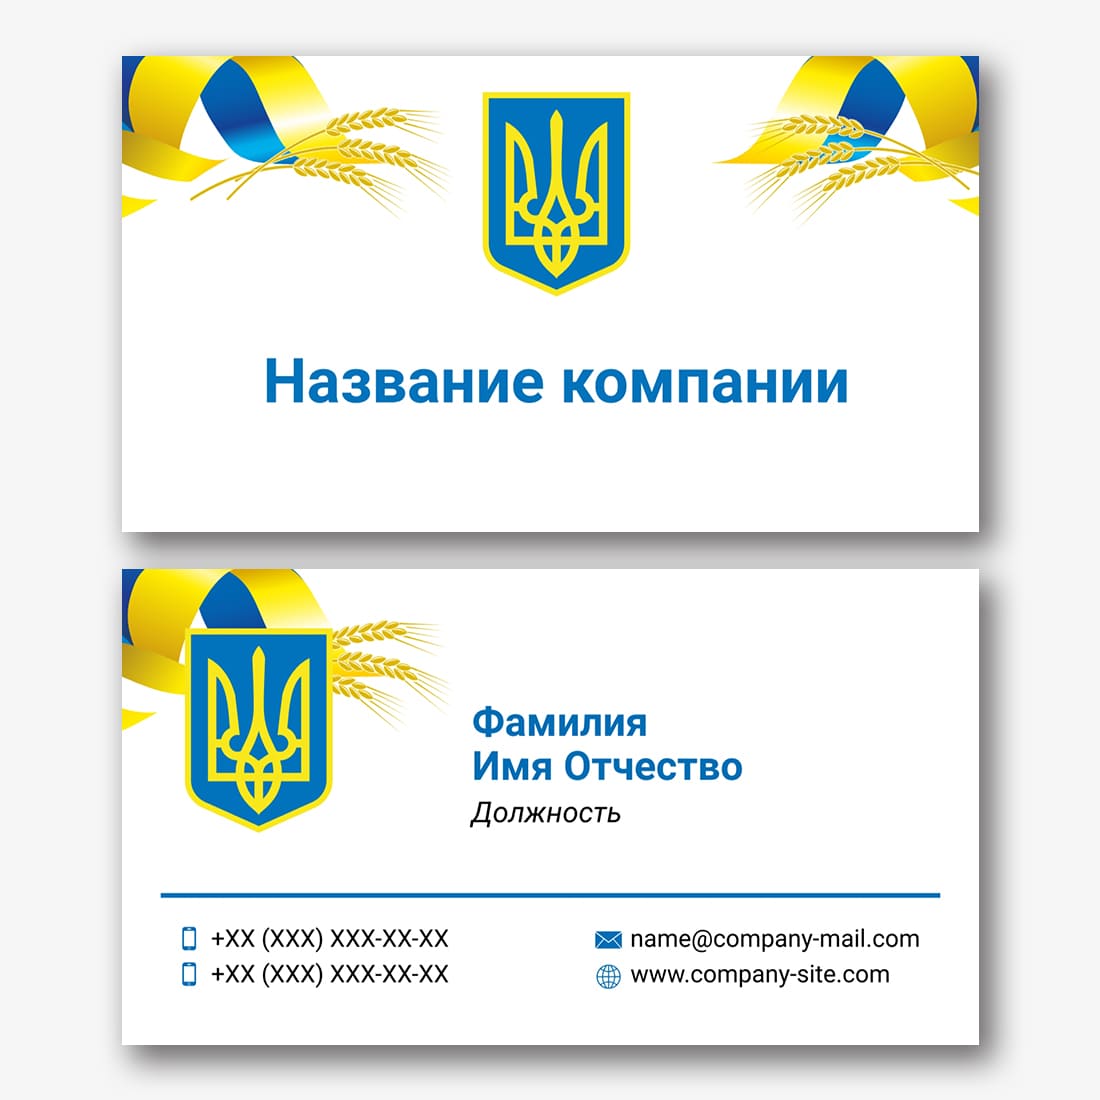 Визитка страны. Визитная карточка Украины. Визитка Украина.